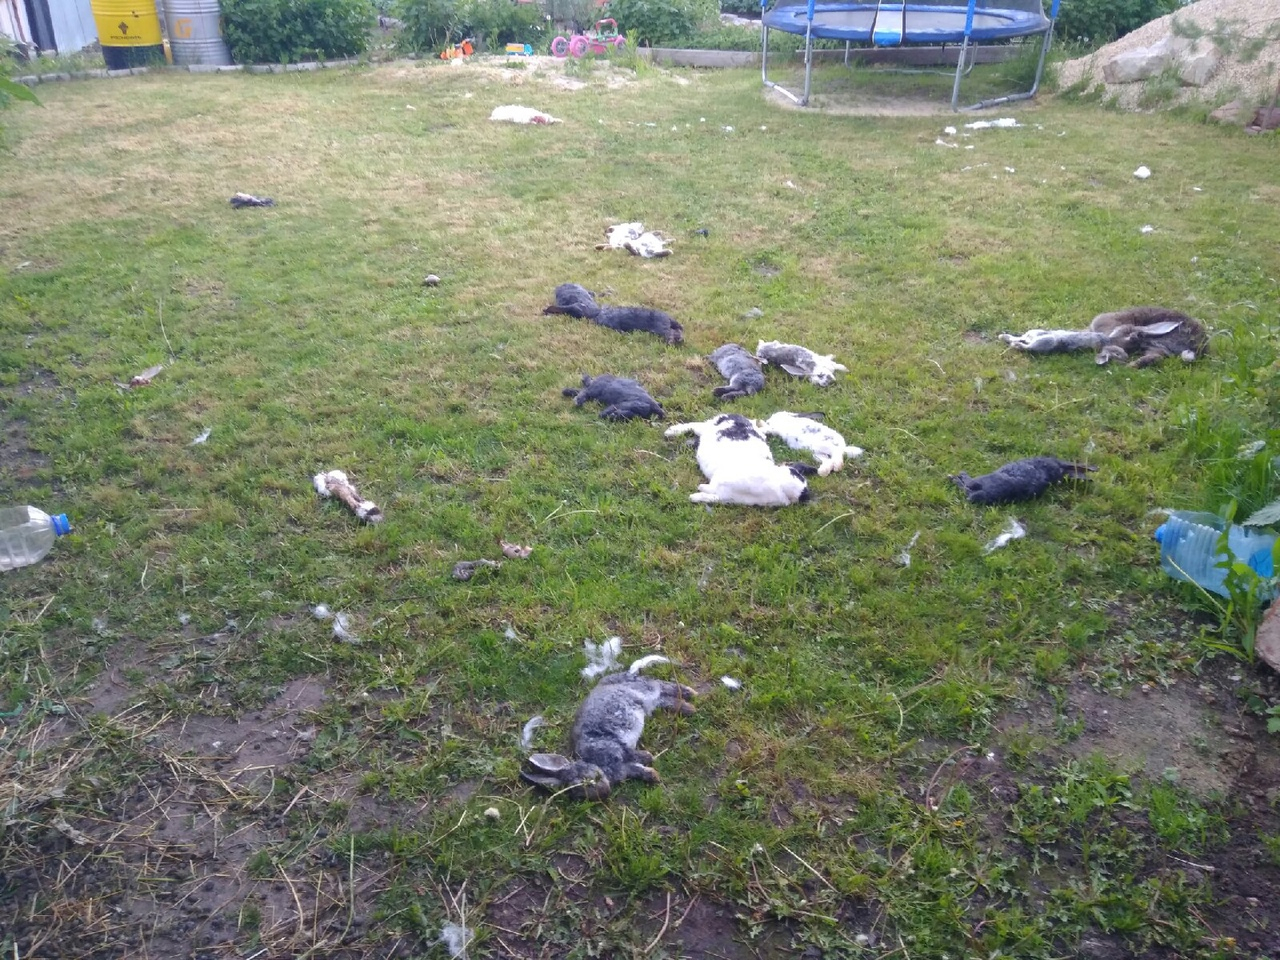 Отлов не справляется: в Пронске собаки убили 18 кроликов